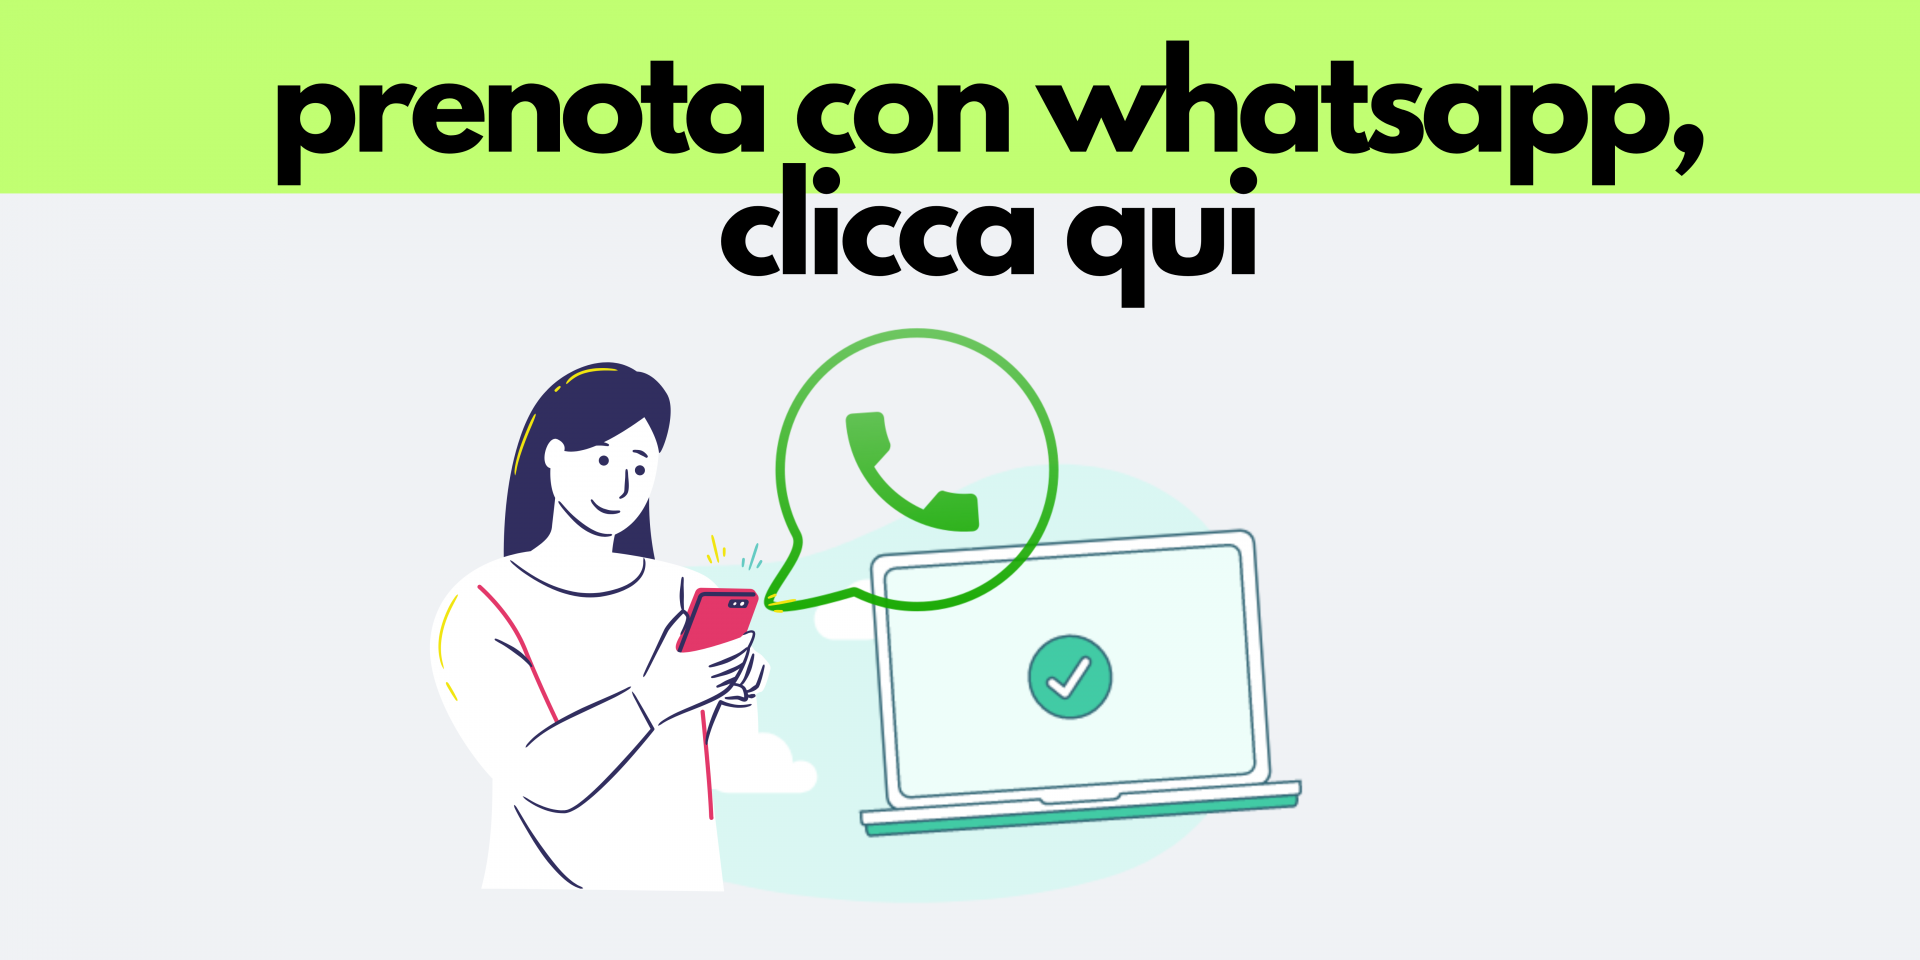 prenota-con-whatsapp-clicca-qui.png